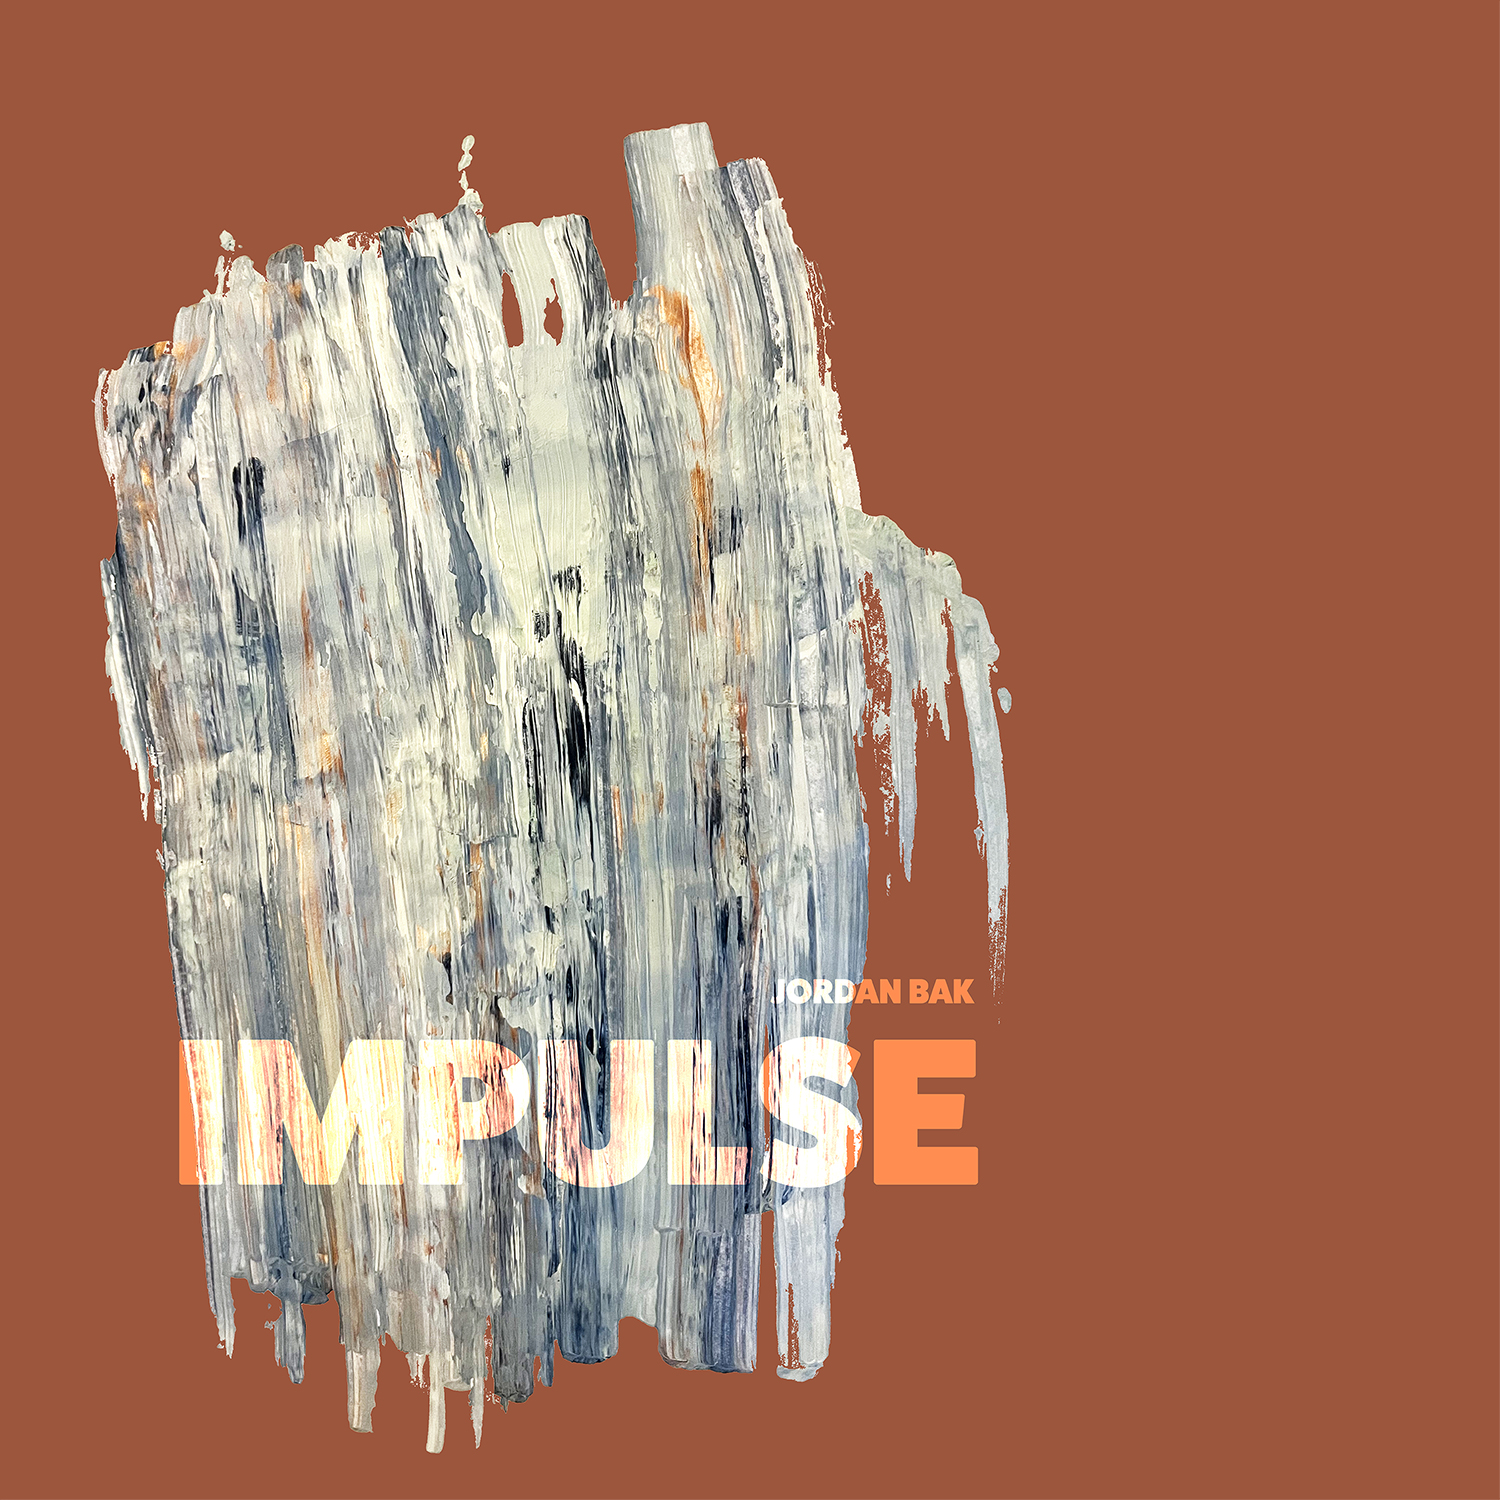 impulse album cover